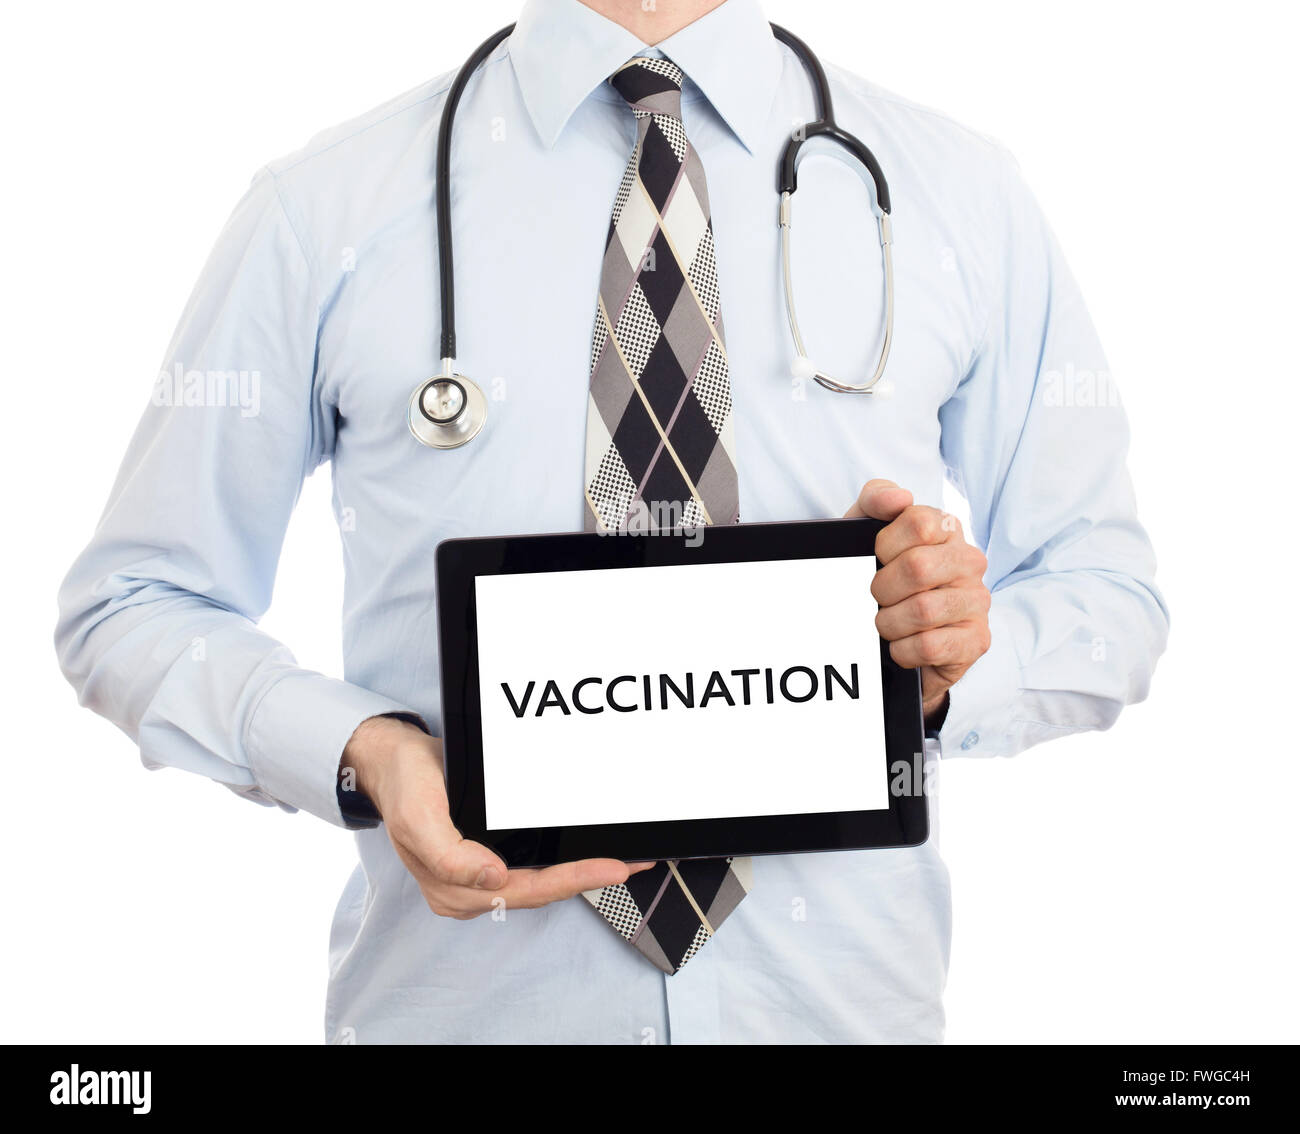 Médecin, isolé sur blanc backgroun, holding digital tablet - Vaccination Banque D'Images